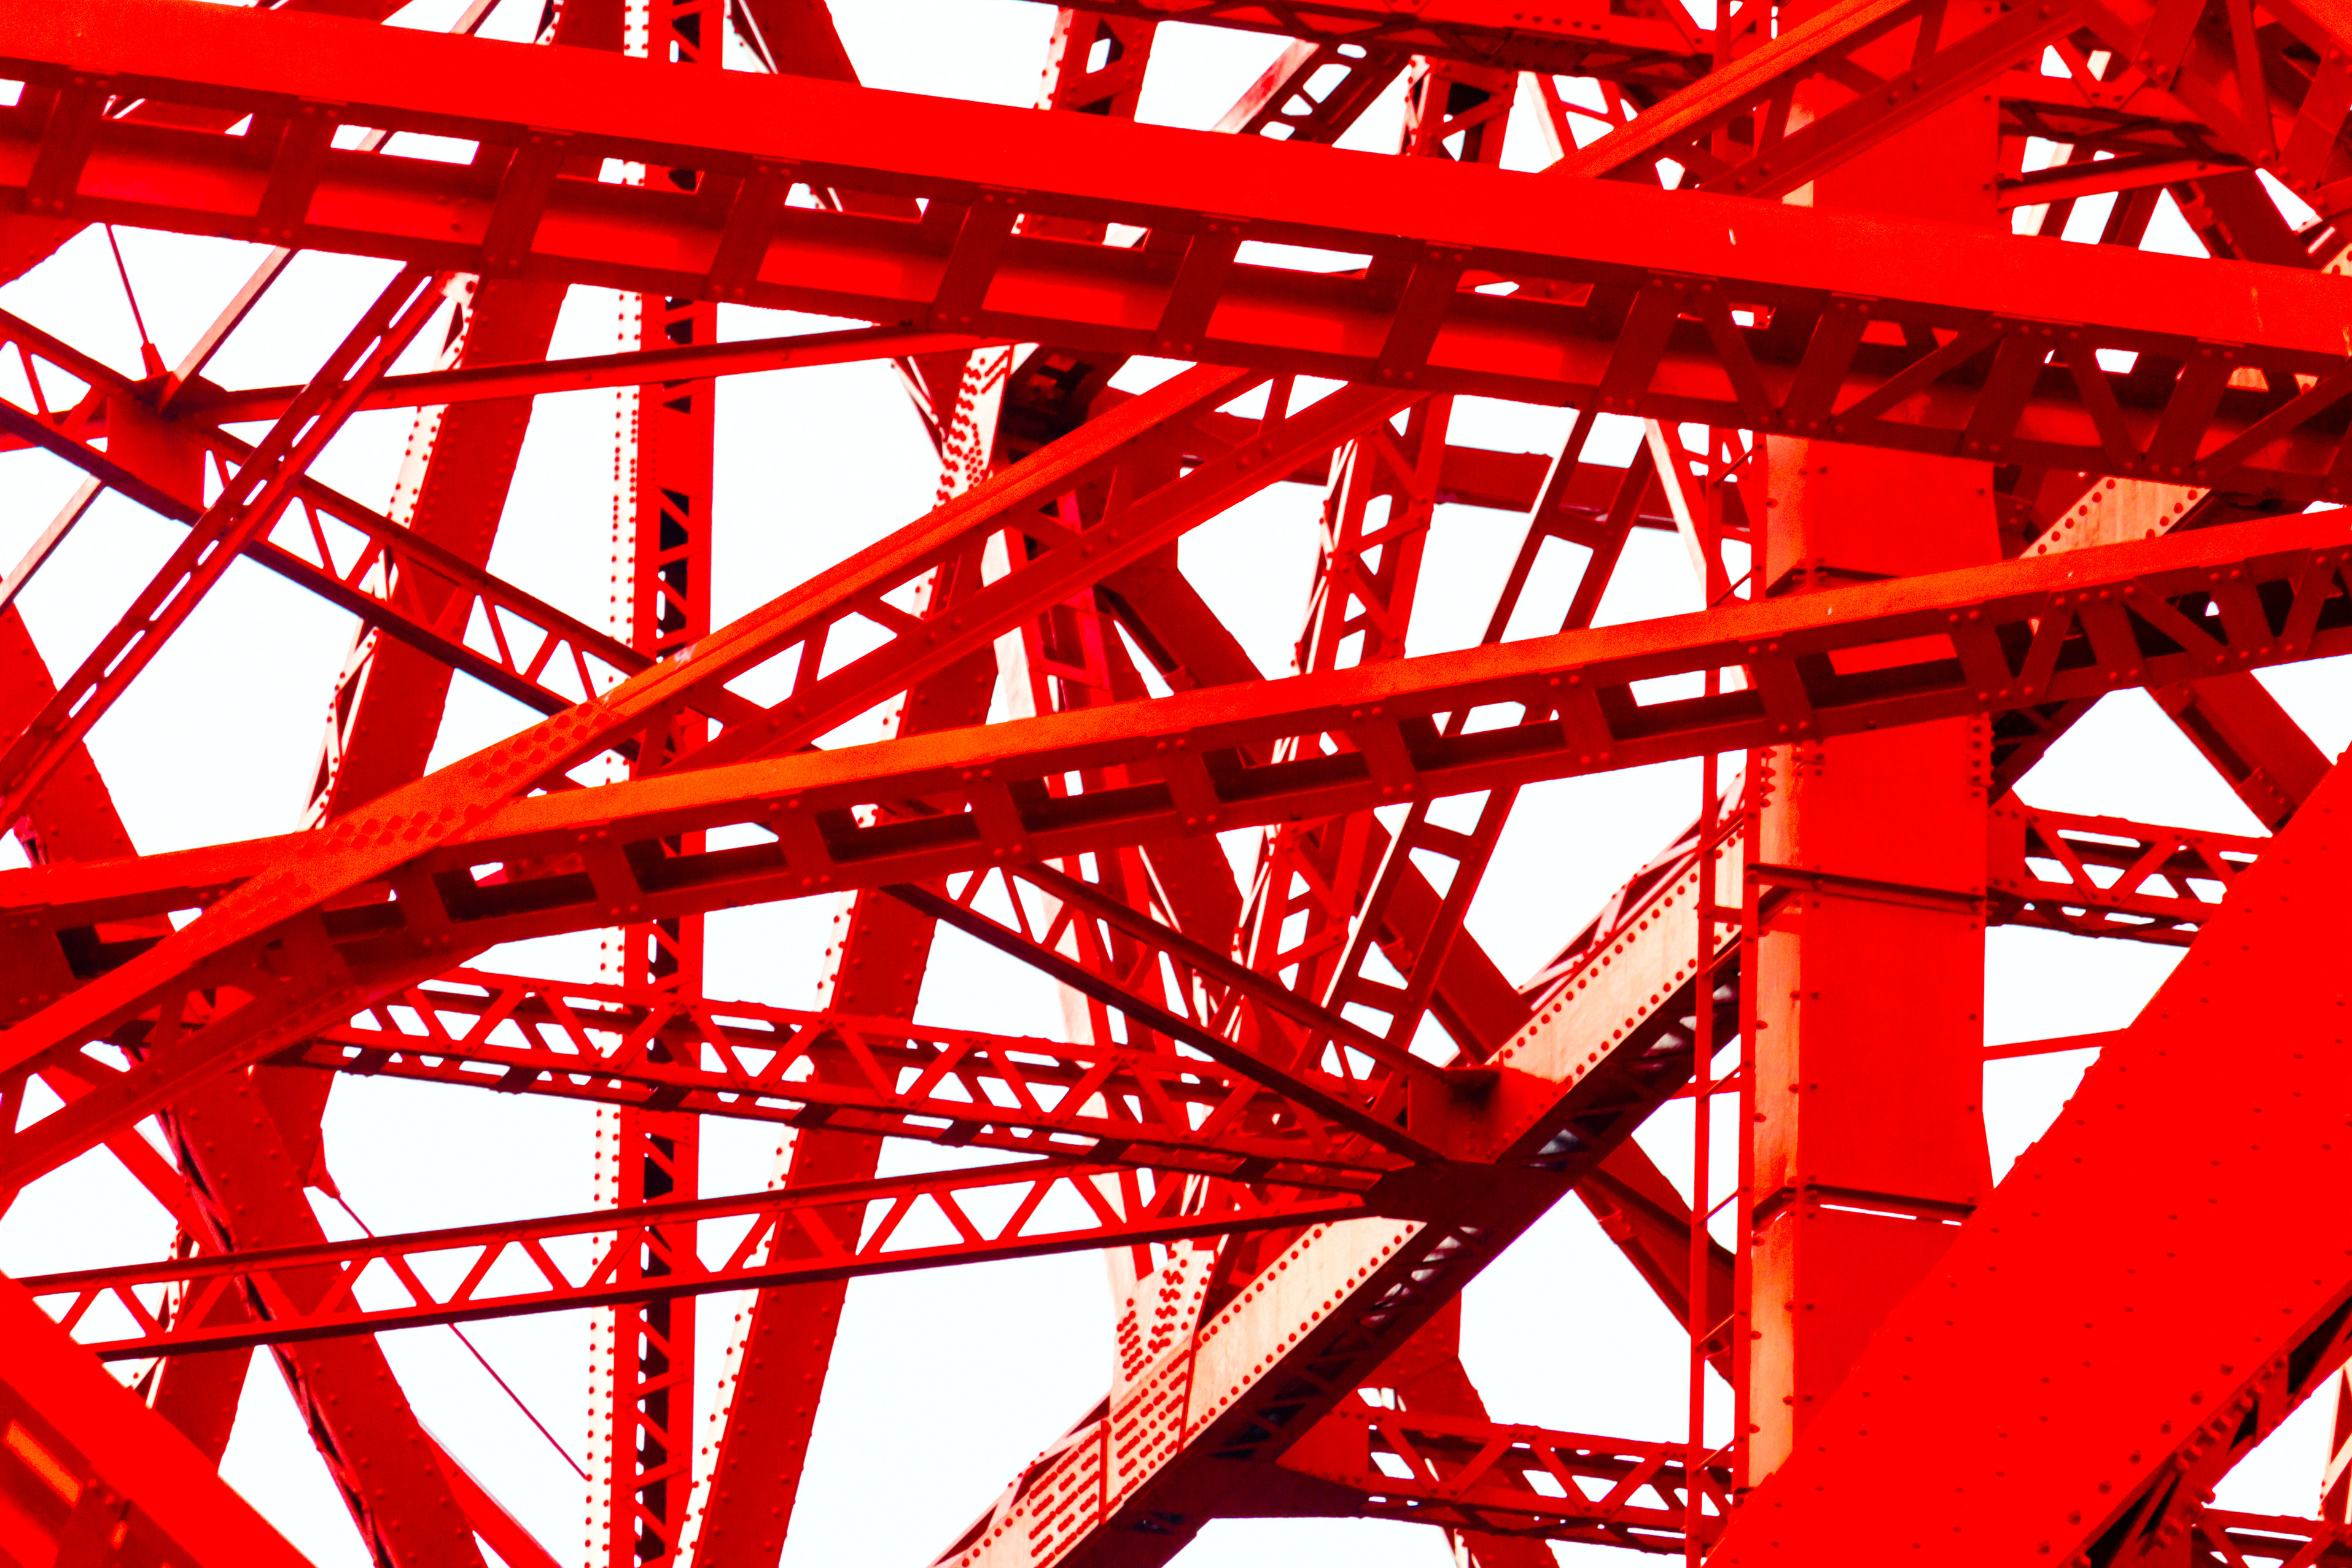 General 3830x2554 Tokyo Tower Neon Genesis Evangelion red steel